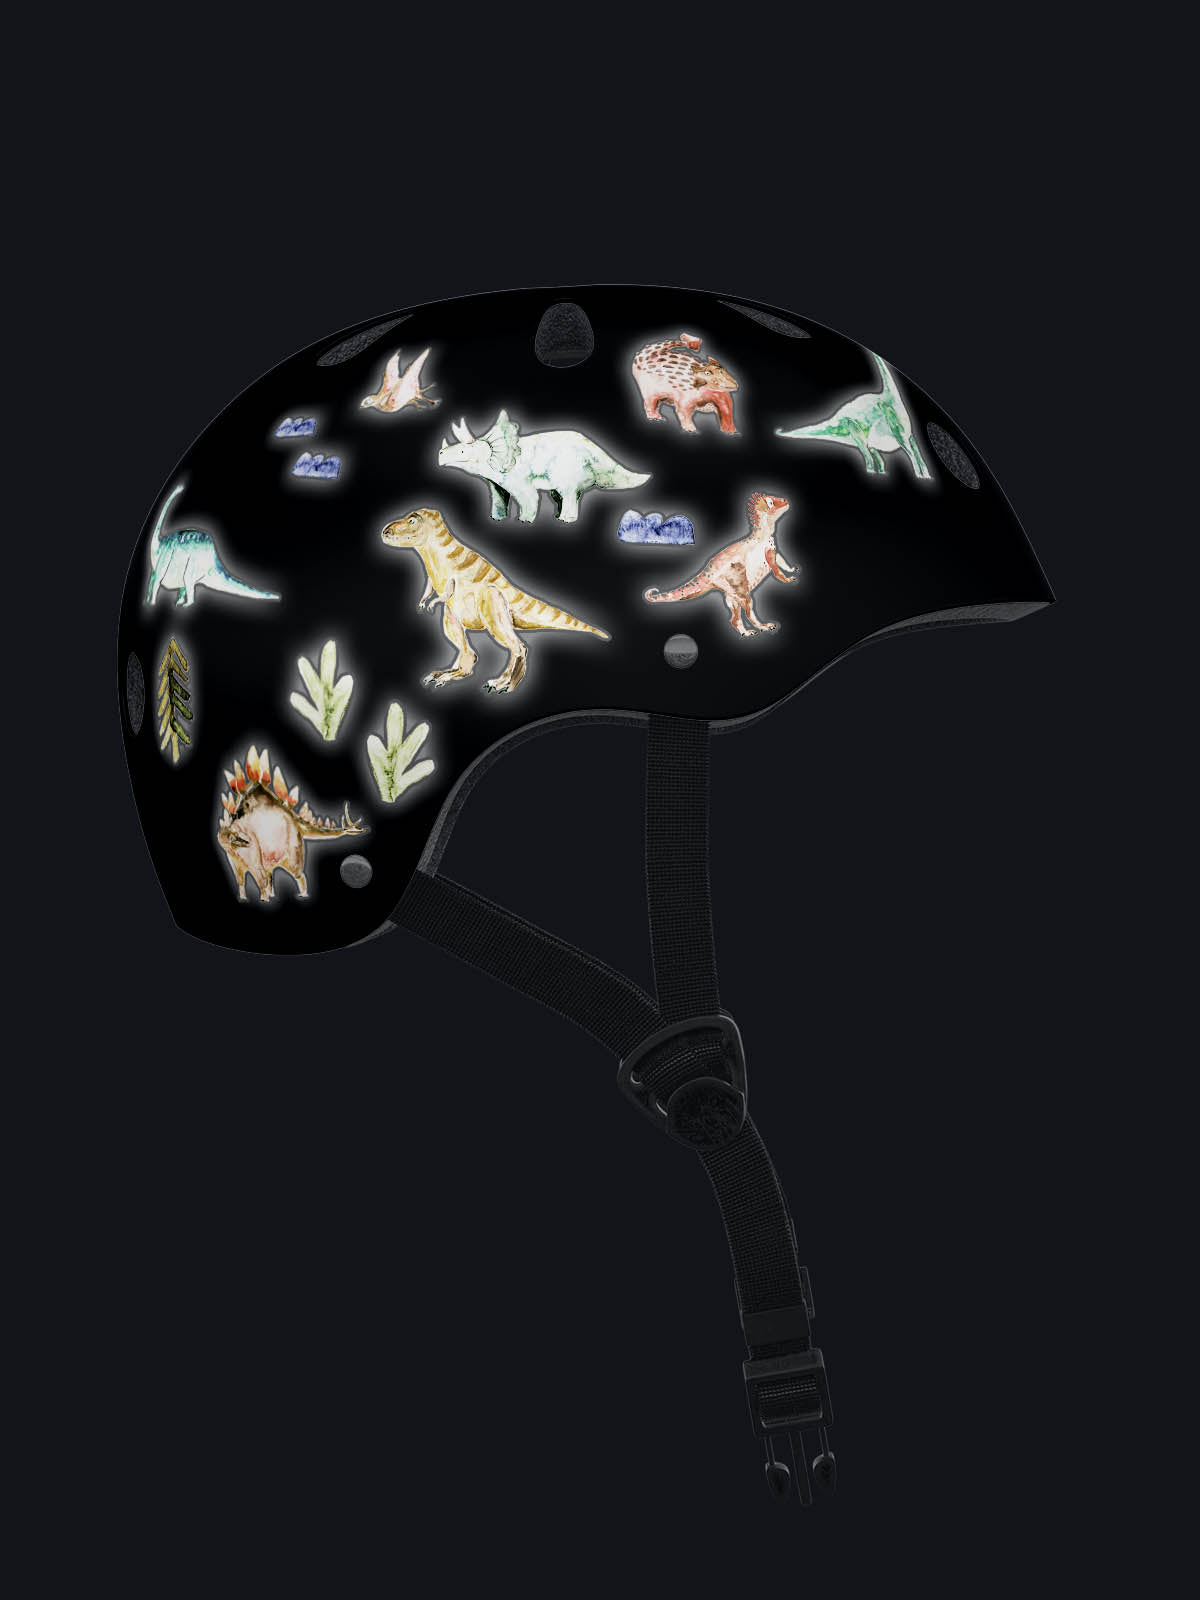 Helm bei Nacht beklebt mit reflektierenden Dino Aufklebern die im Dunkeln leuchten